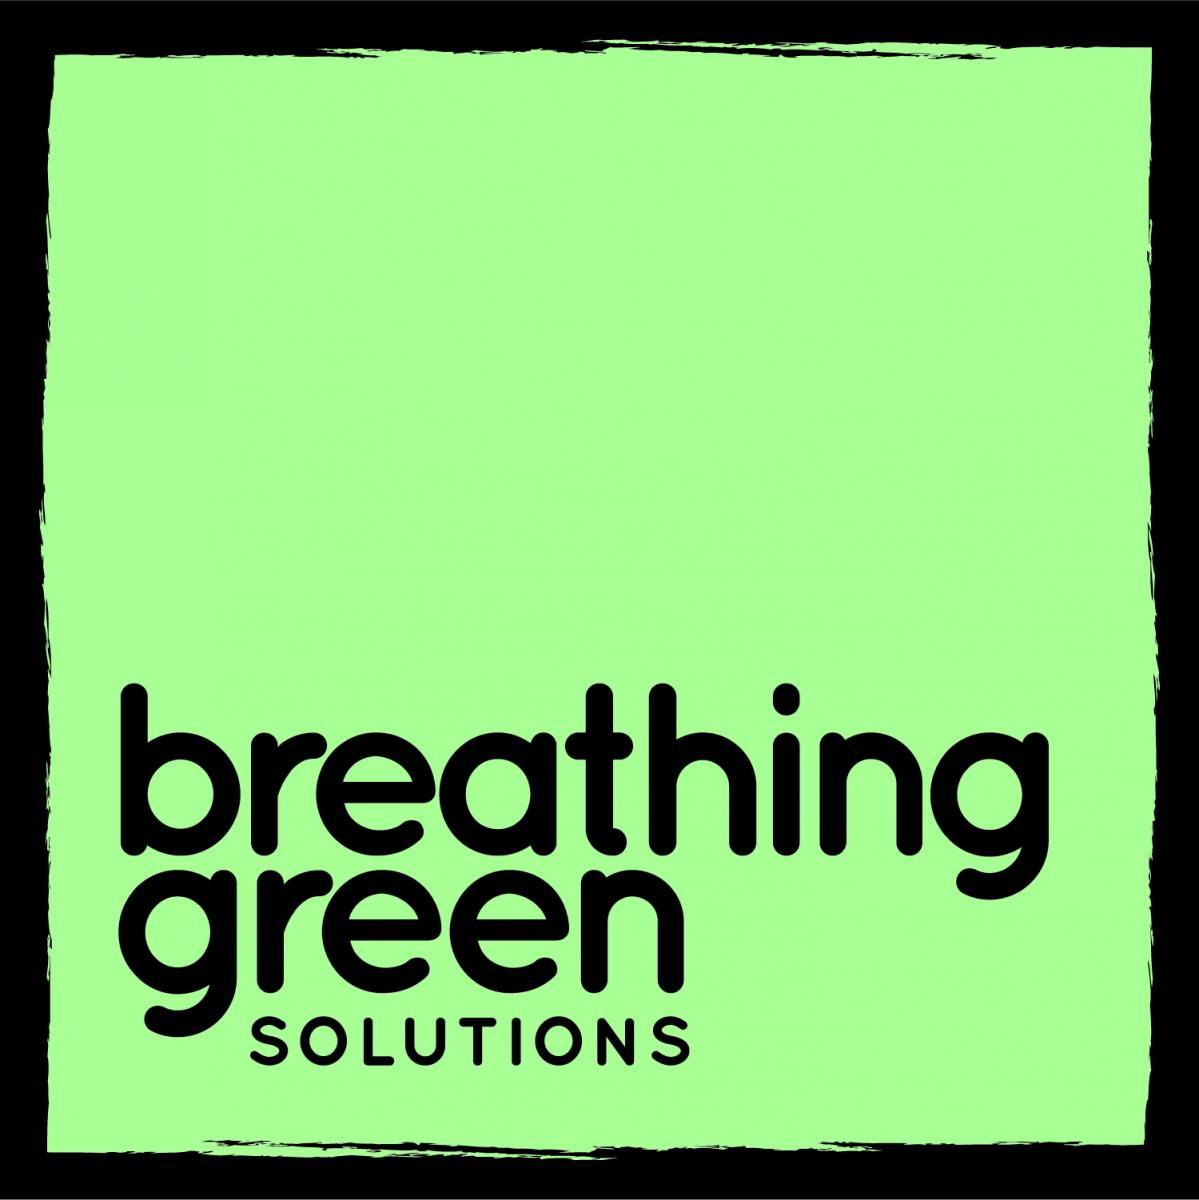 BREA-2776-01 Breathing Green Solutions Final Logo - CMYK (coated) - COLOUR (BLACK BG).jpg